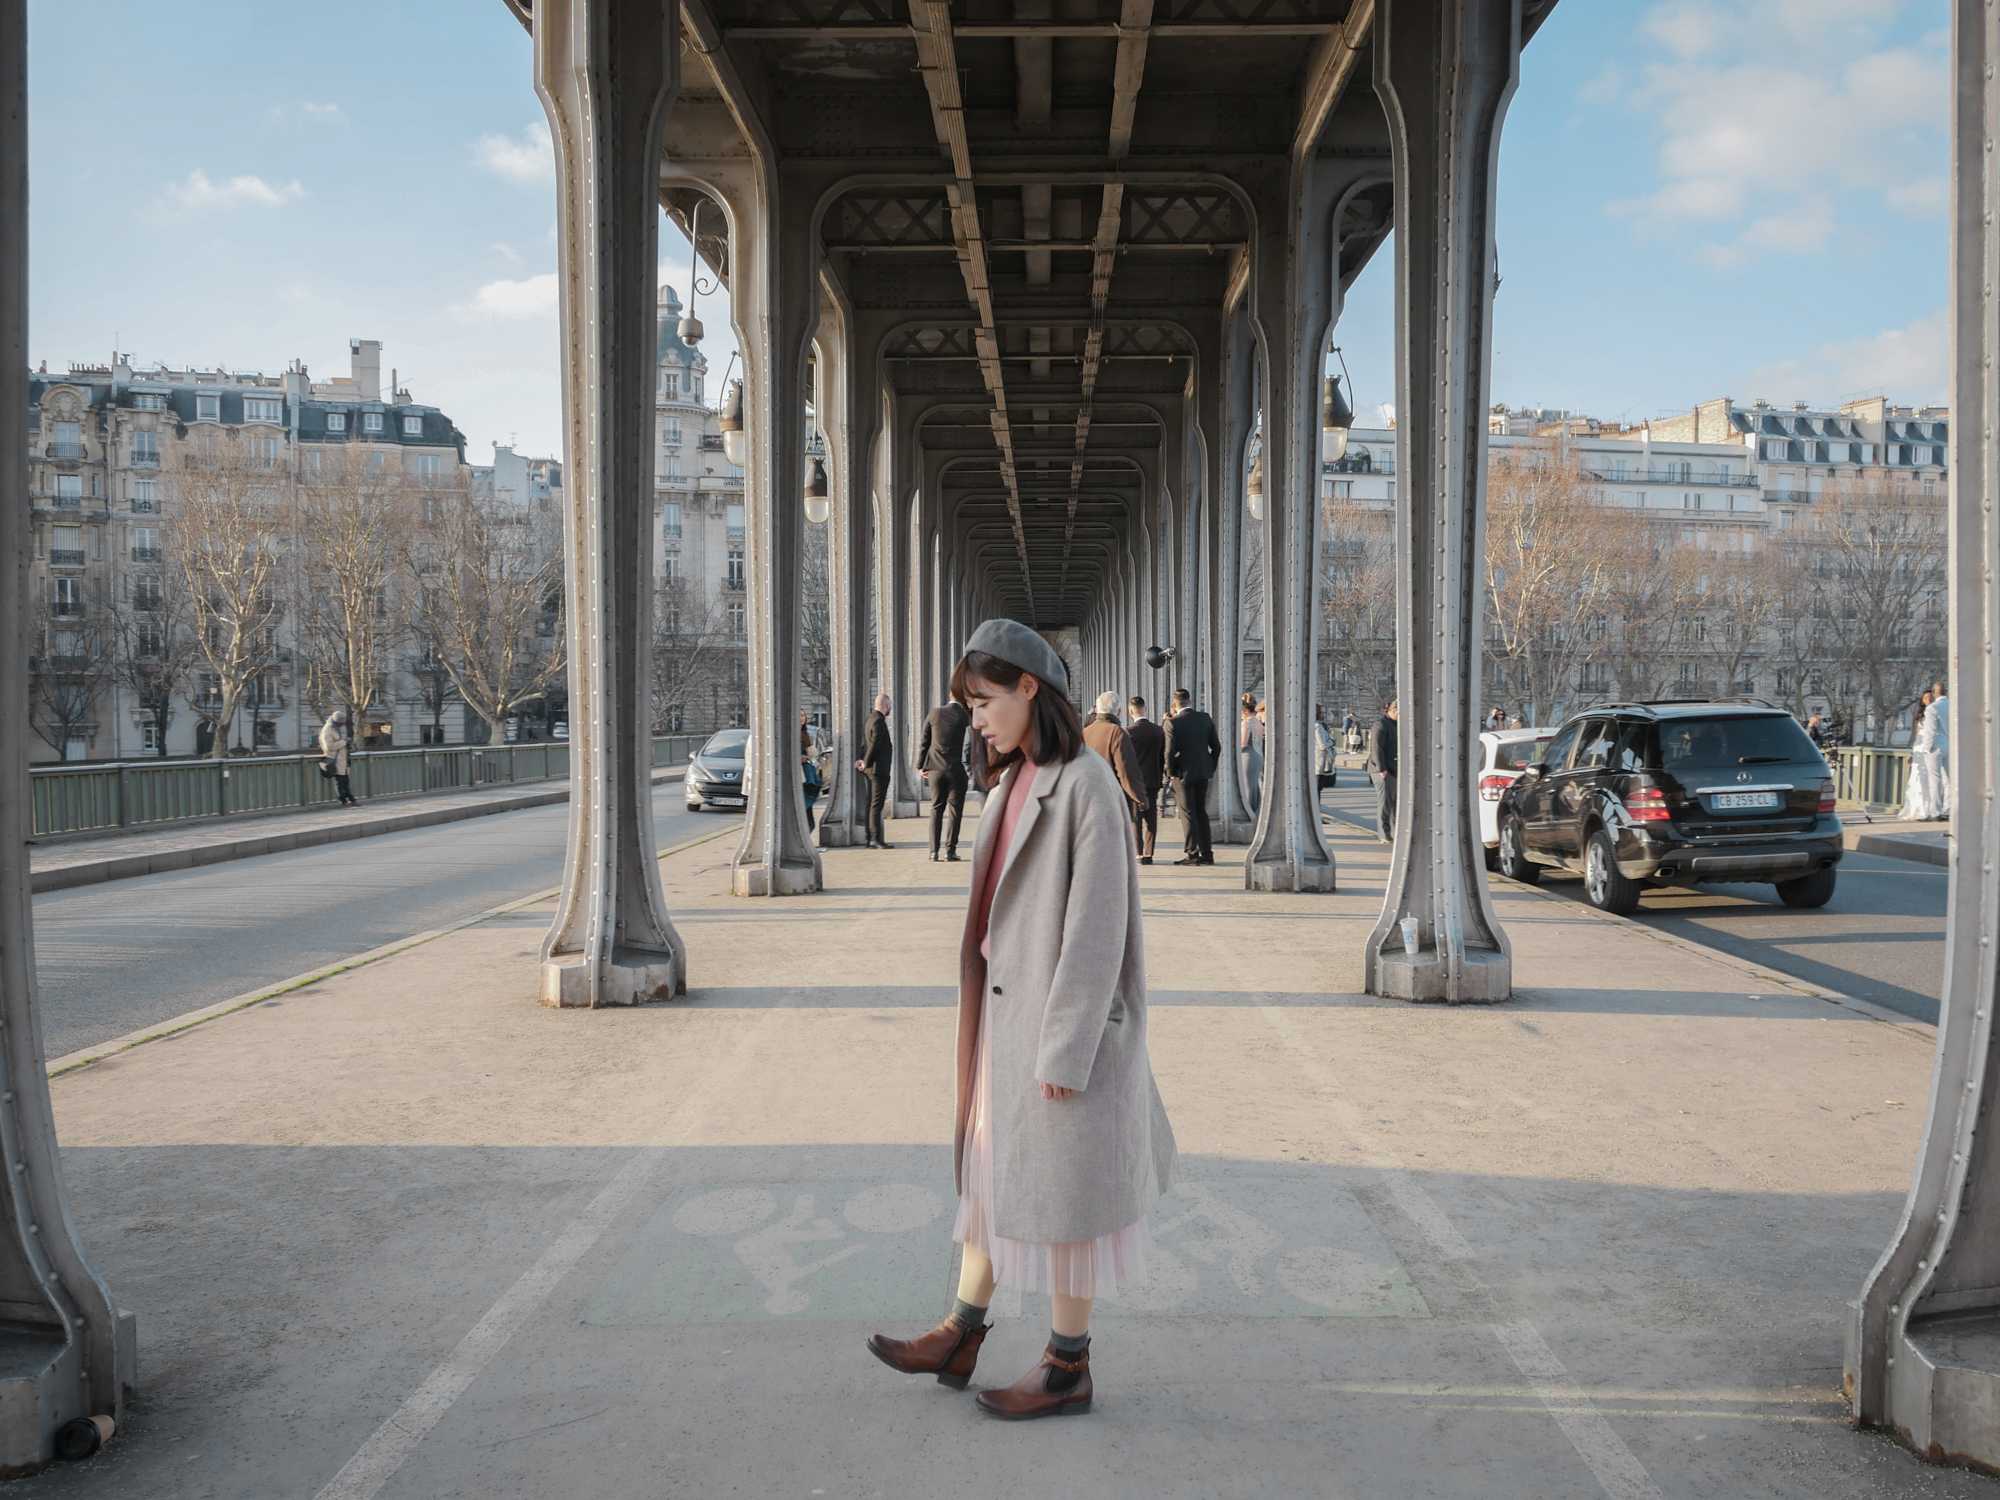 法國巴黎景點 比爾阿坎橋 全面啟動電影場景 巴黎鐵塔絕佳取景點